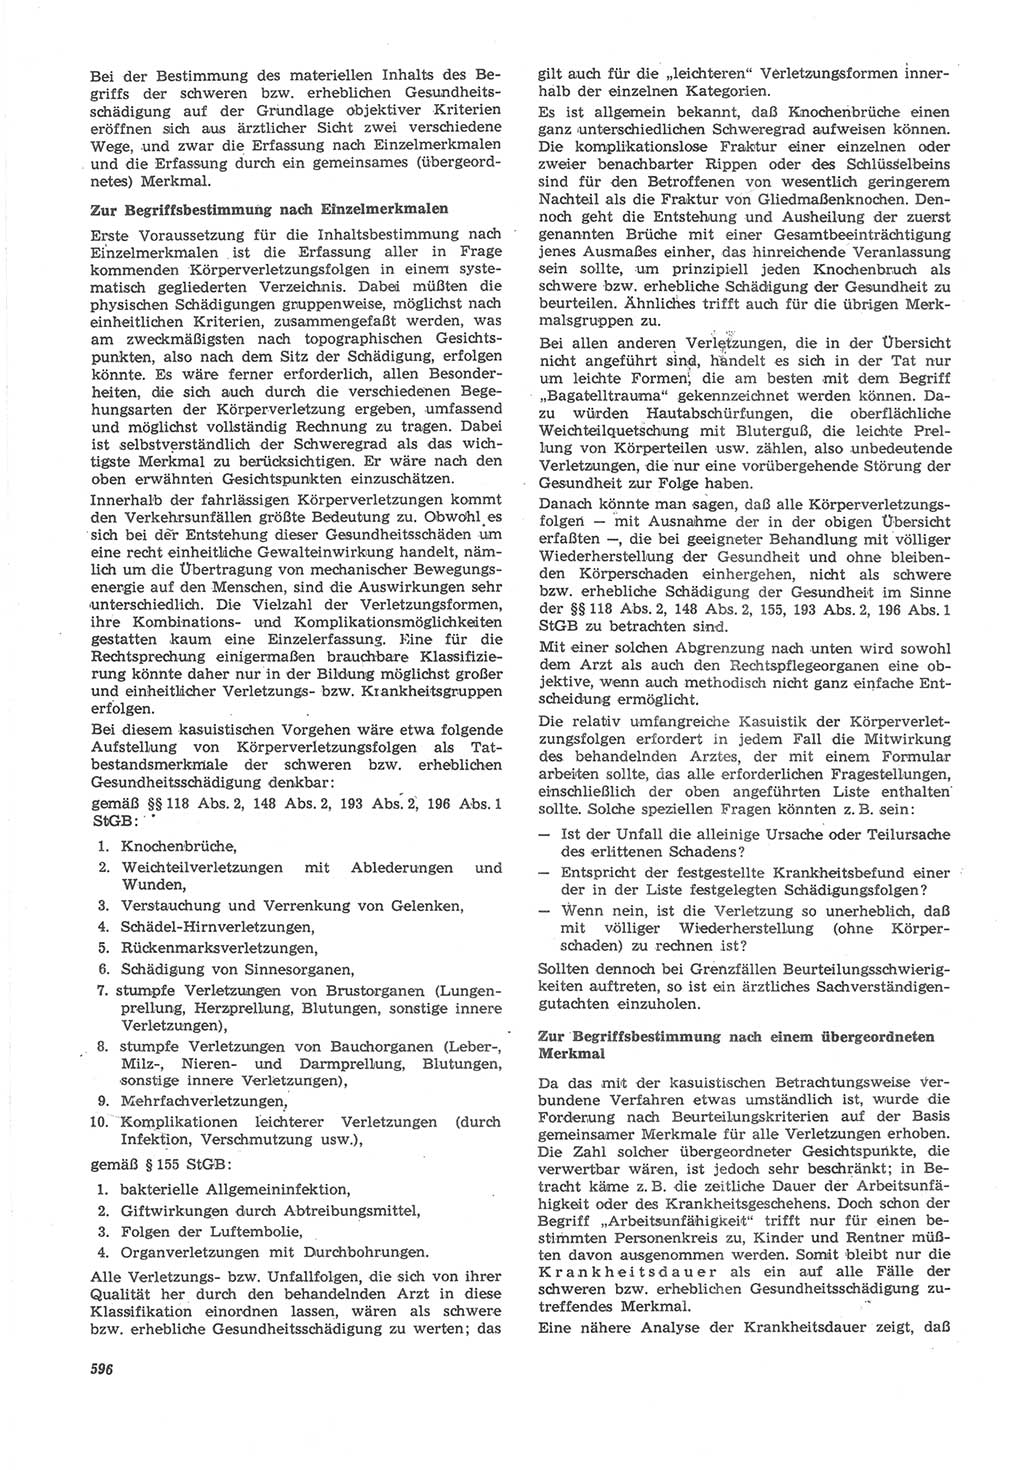 Neue Justiz (NJ), Zeitschrift für Recht und Rechtswissenschaft [Deutsche Demokratische Republik (DDR)], 22. Jahrgang 1968, Seite 596 (NJ DDR 1968, S. 596)